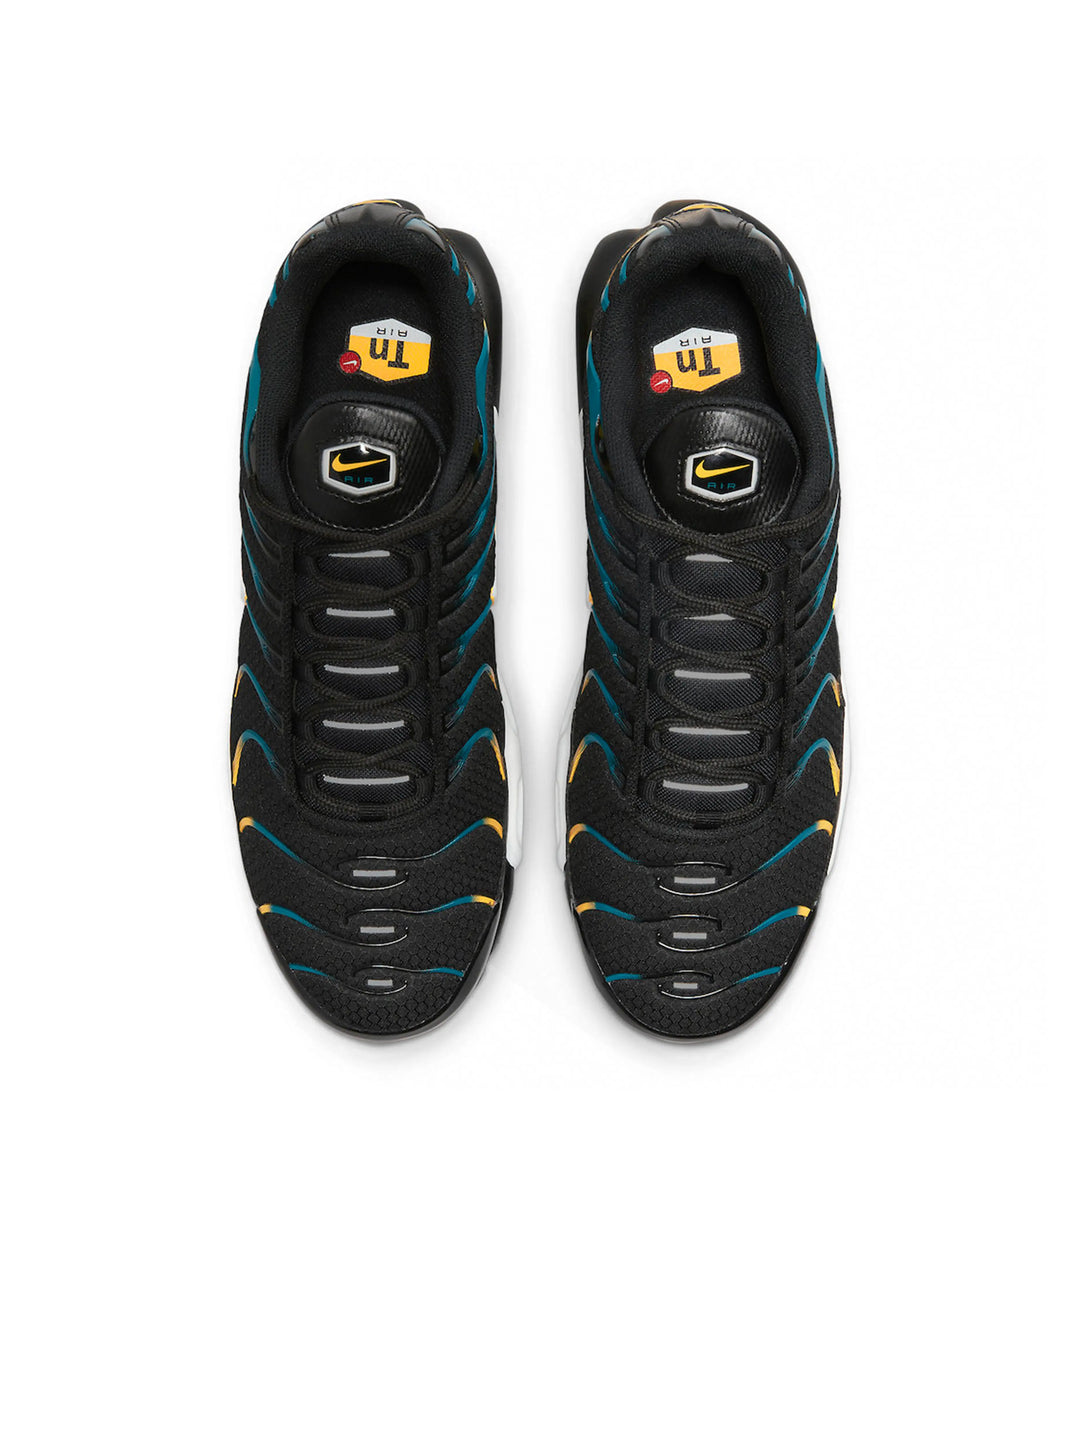 Nike Air Max Plus Tn Black Teal Yellow Prior